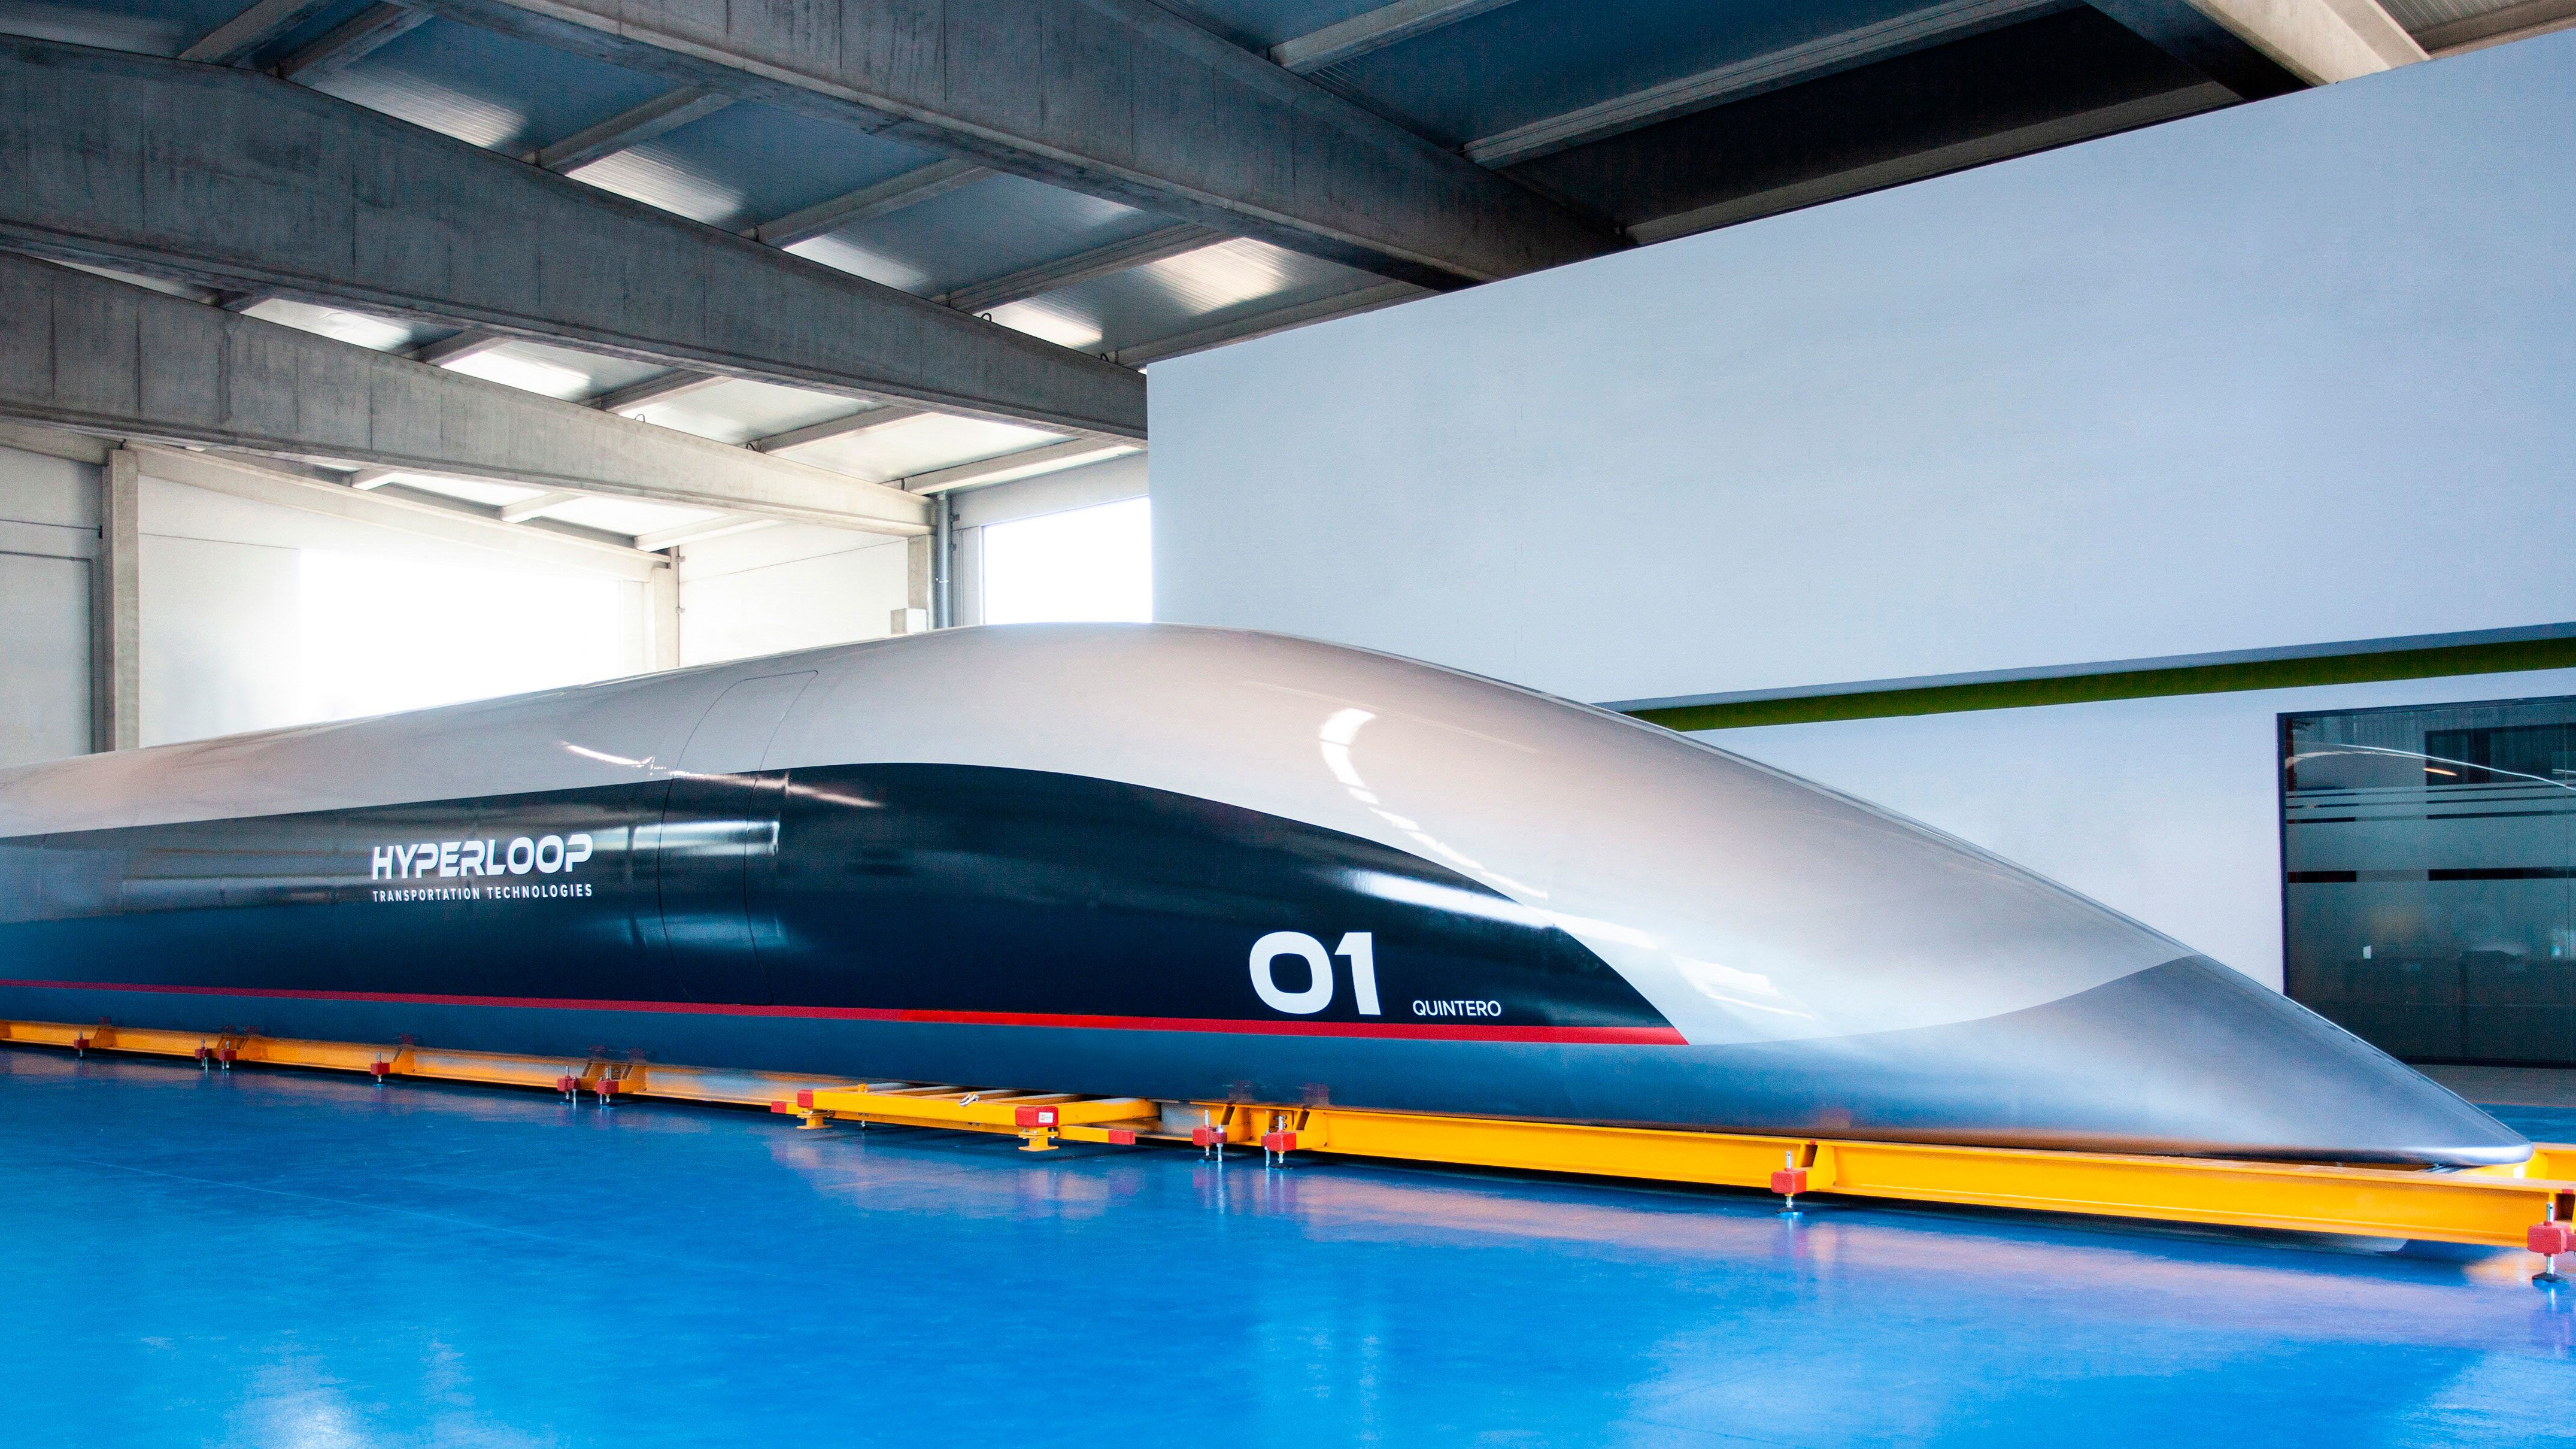 How long until Hyperloop is here? | CNN